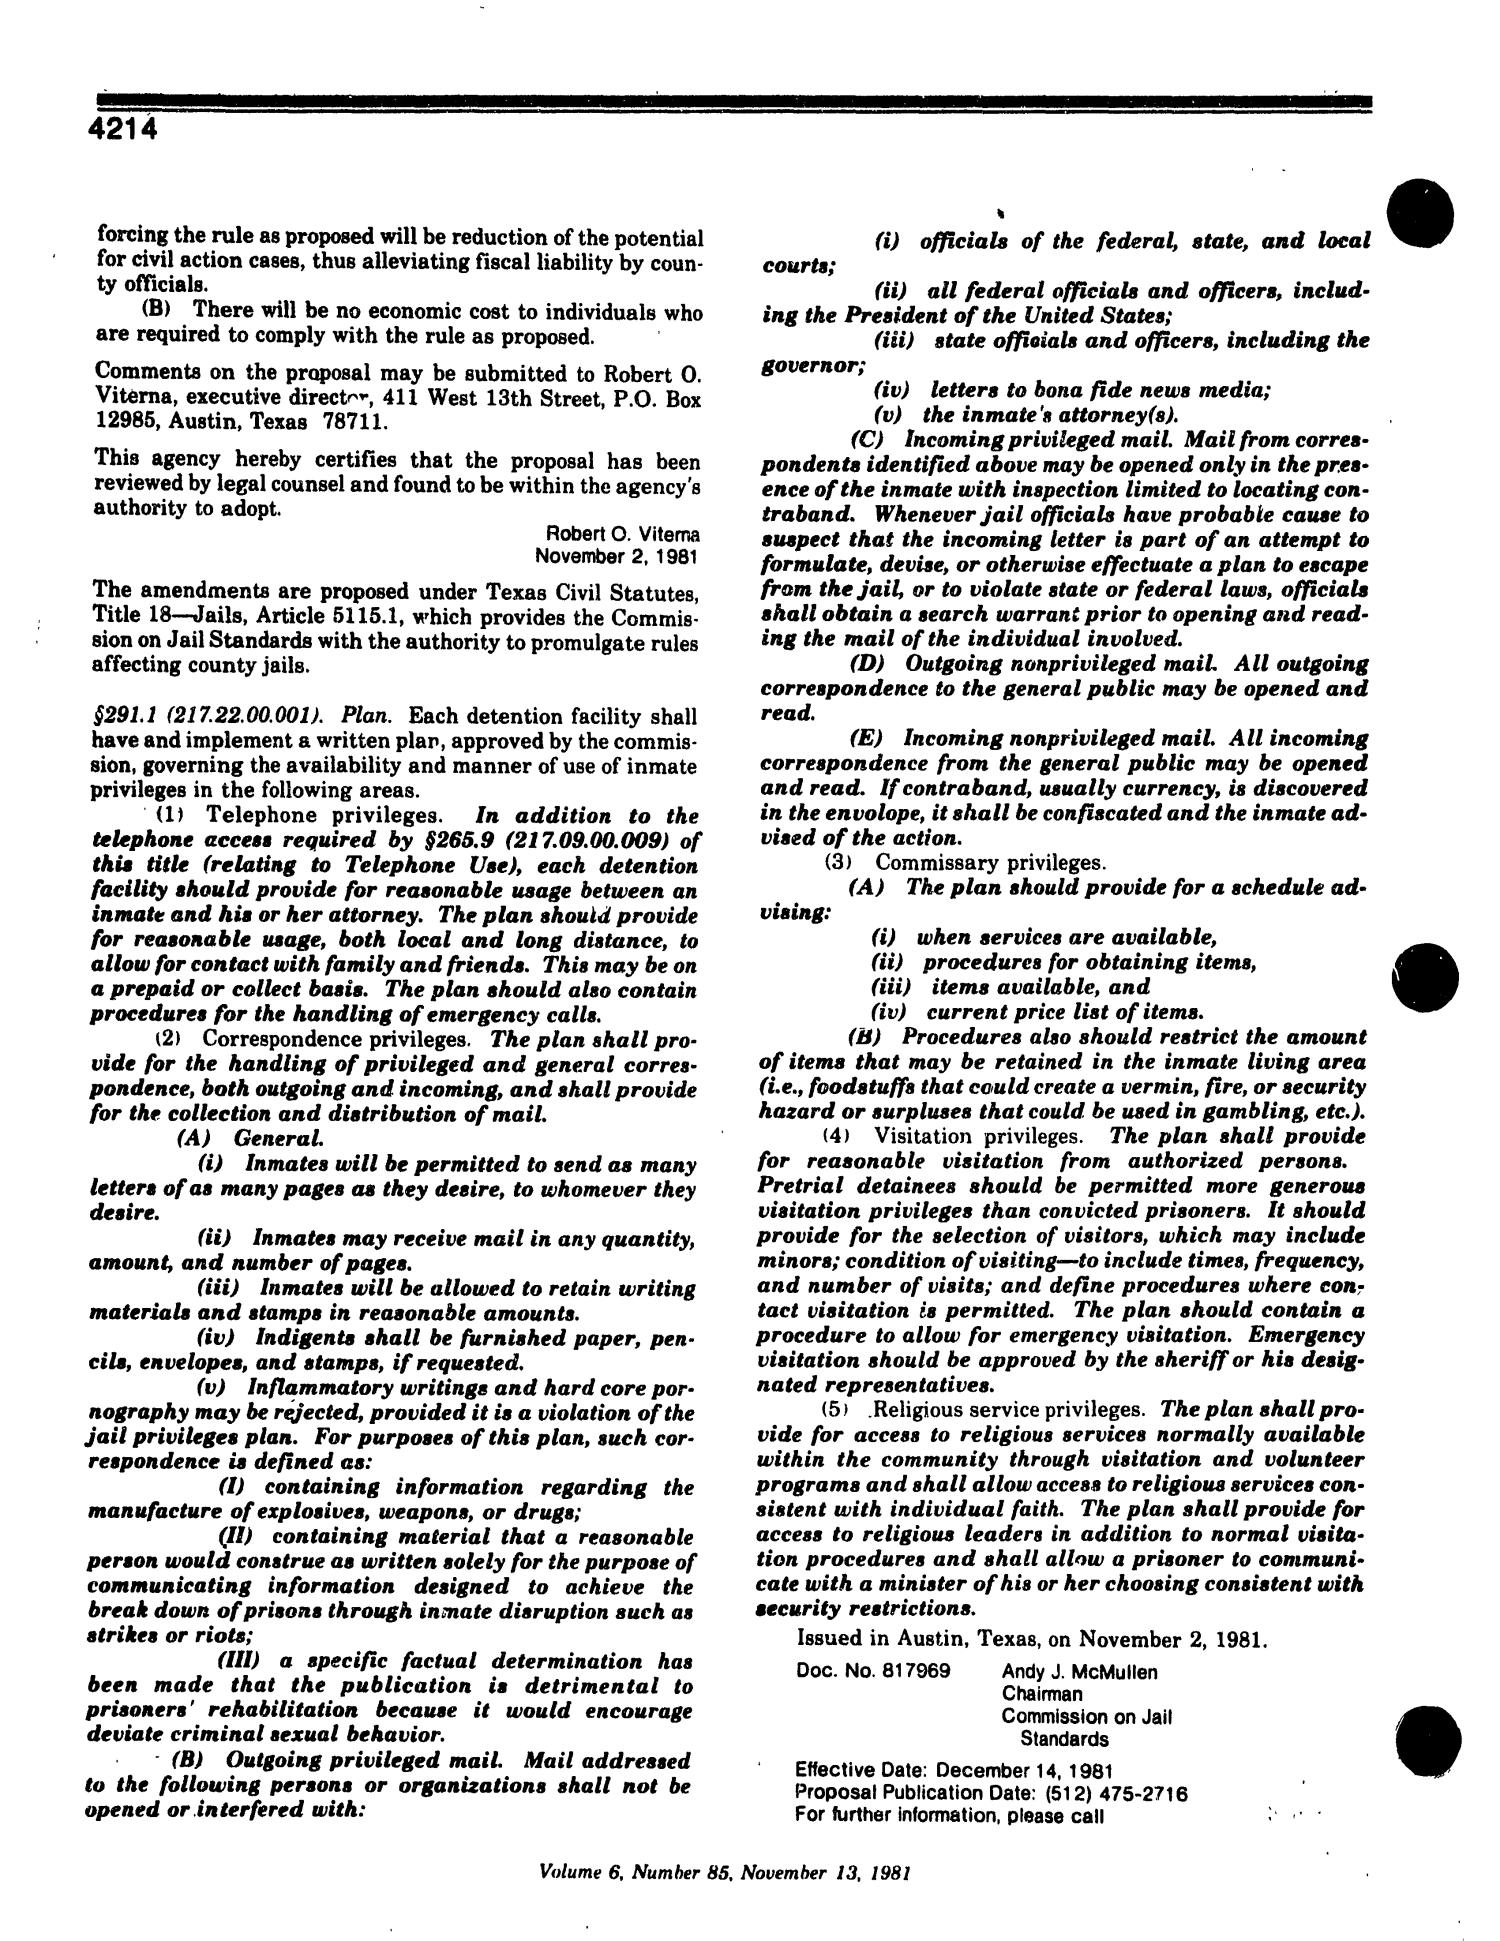 Texas Register, Volume 6, Number 85, Pages 4199-4238, November 13, 1981
                                                
                                                    4214
                                                